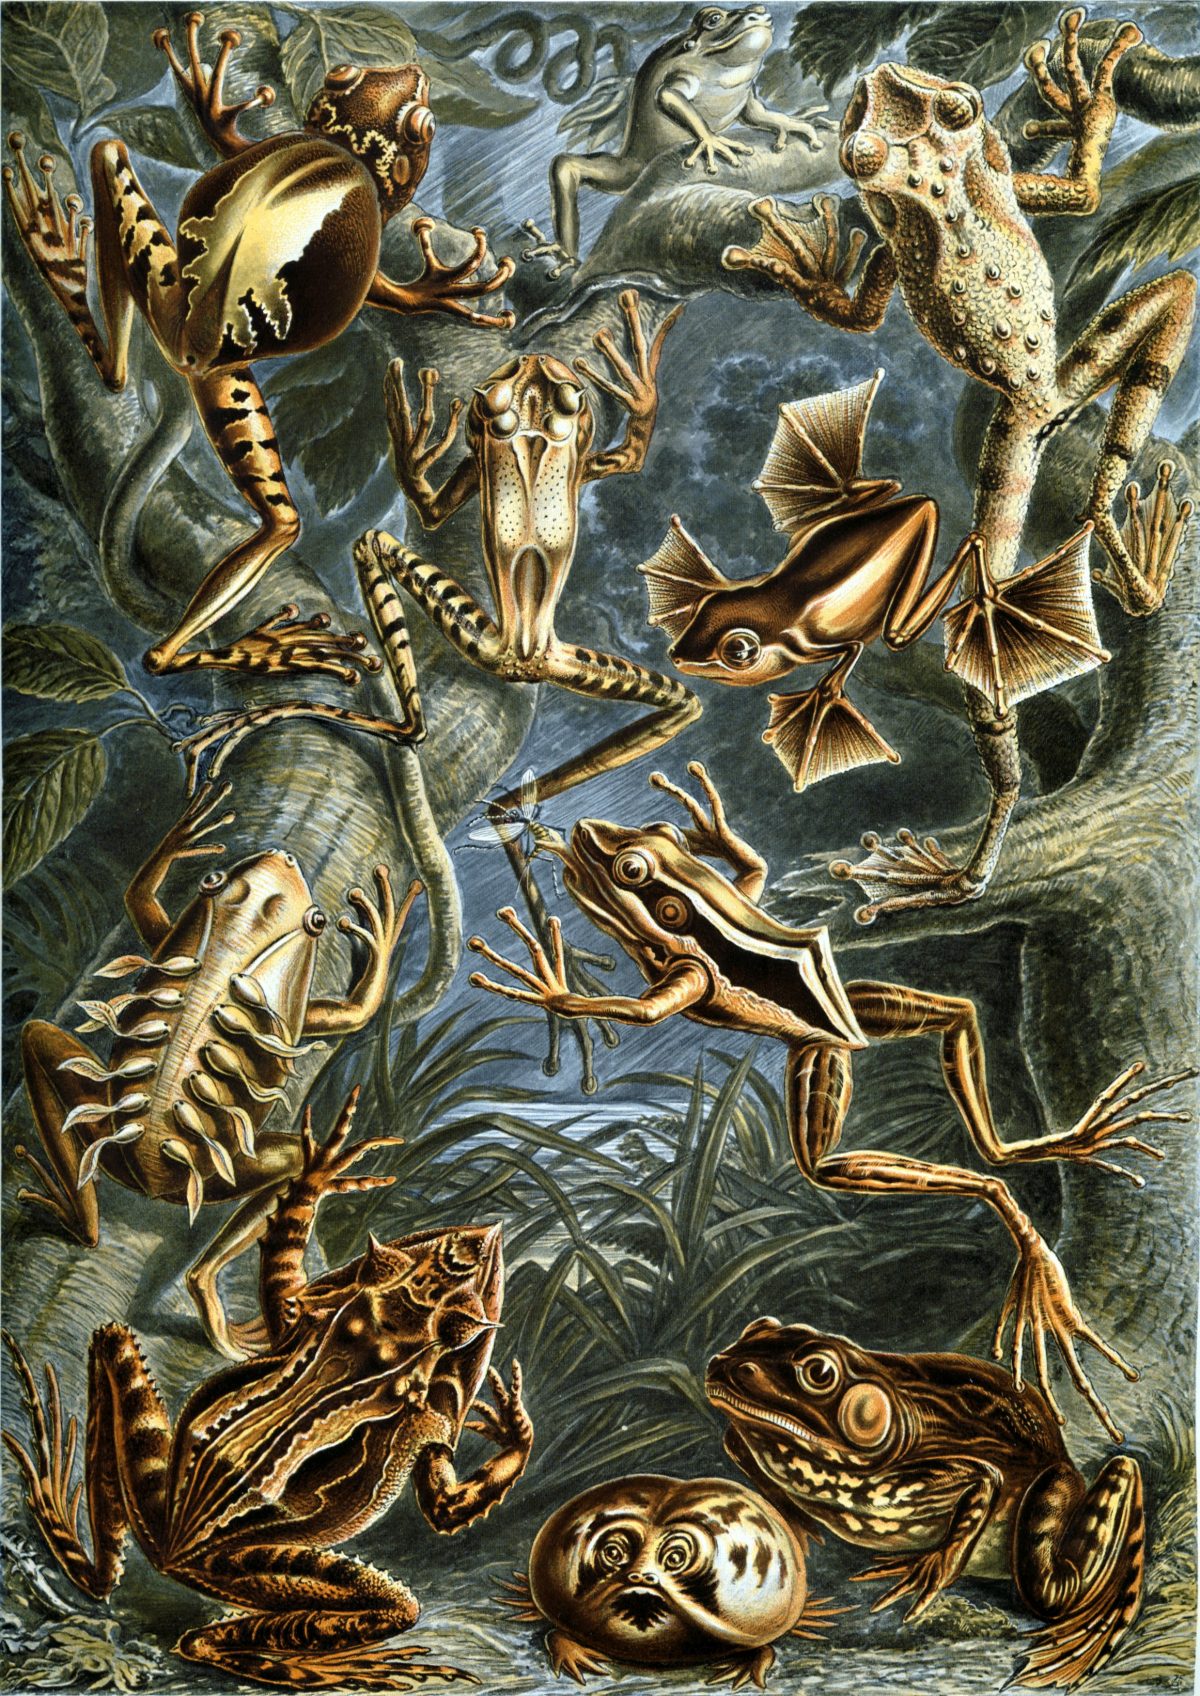 Ernst Haeckel - Kunstformen der Natur (1904), plate 68: Batrachia